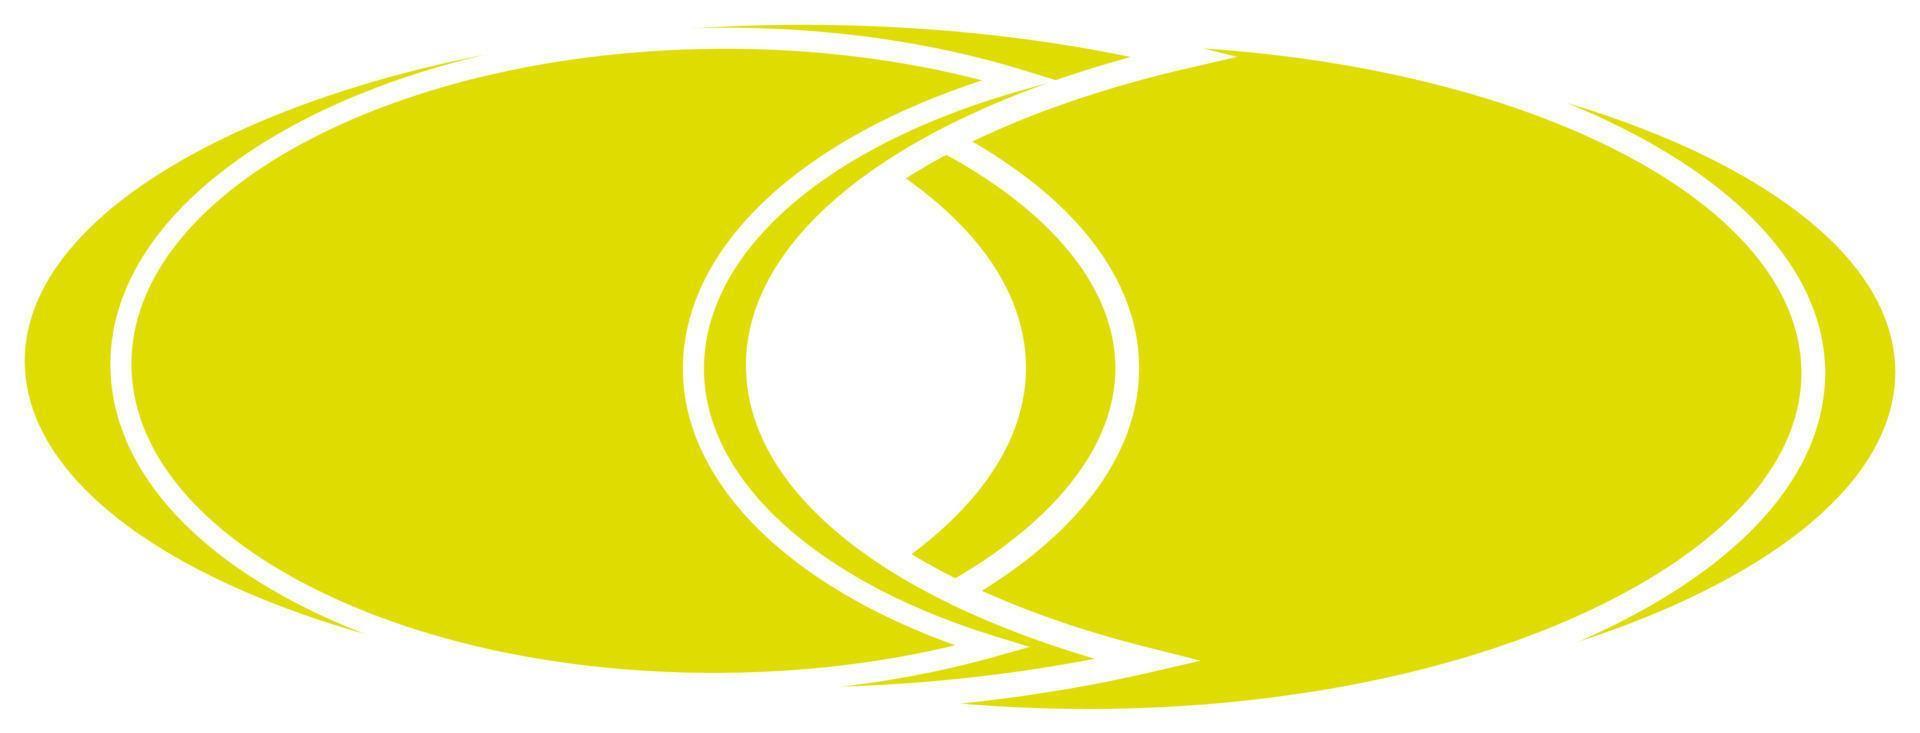 Logotipo fusionado, ilustración, vector sobre fondo blanco.